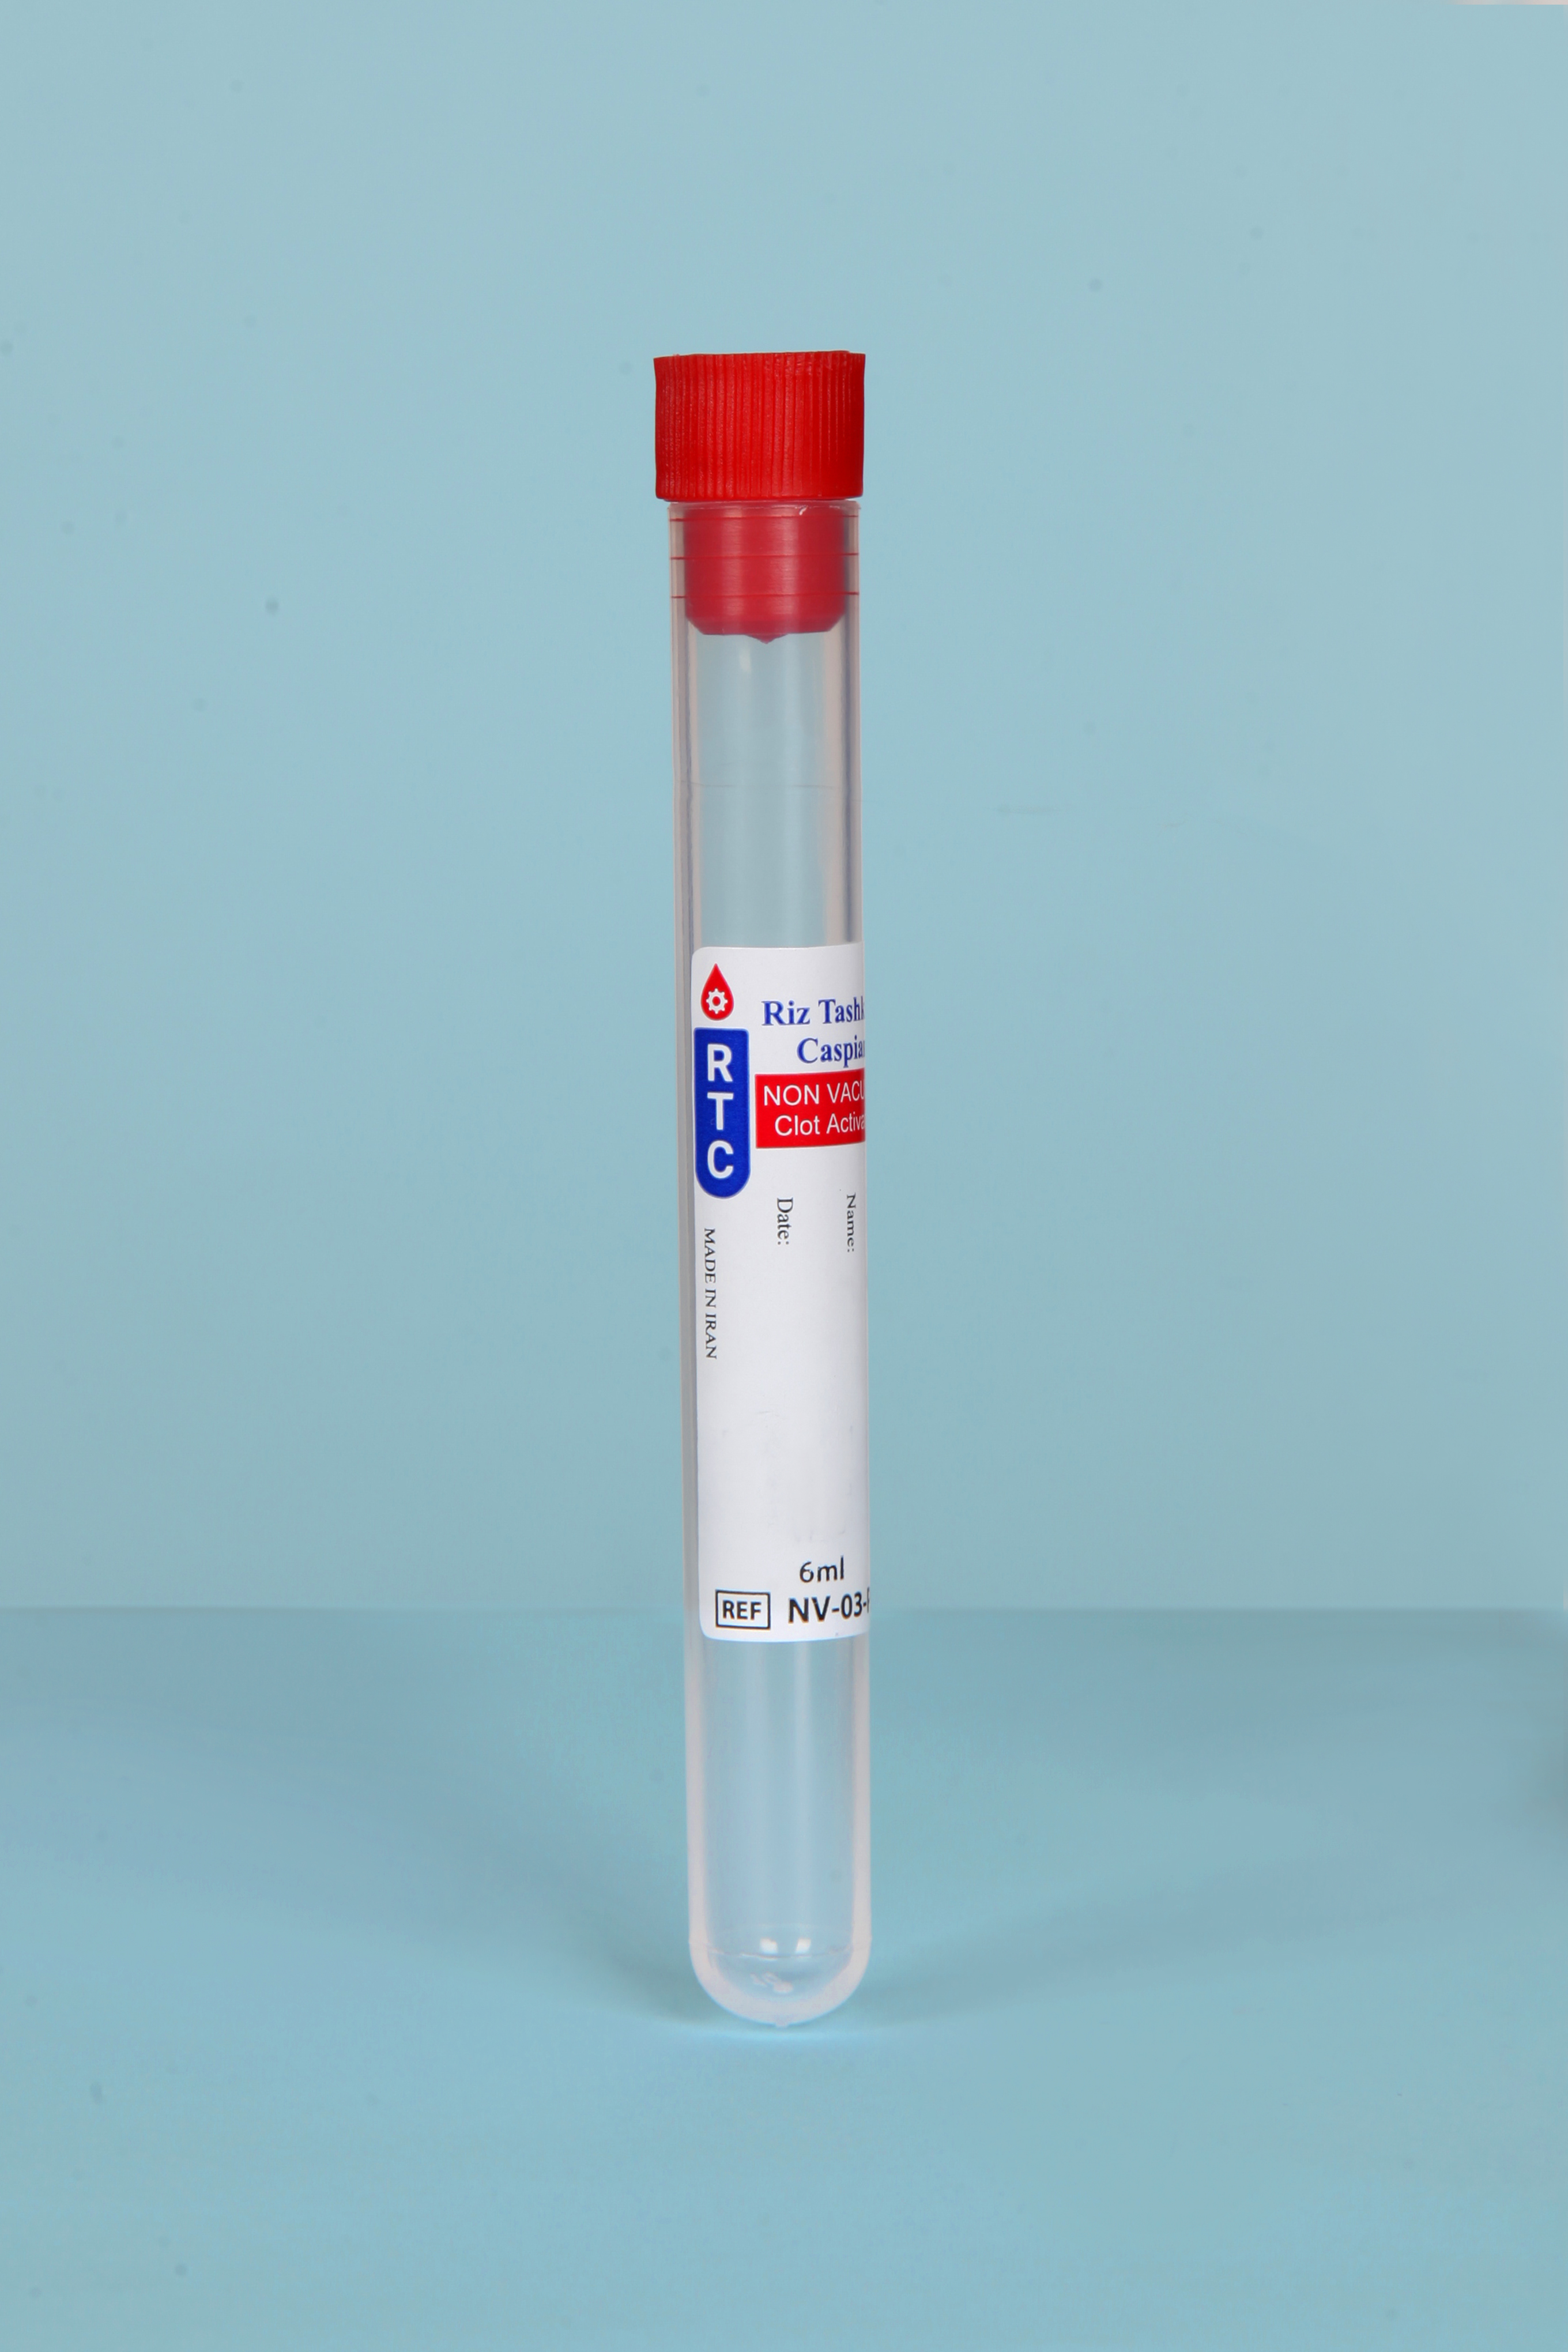 لوله خون گیری حاوی Clot Activator (بدون خلاء)- 6ml - Non Vacuum Blood Collection Test Tube  Clot Activator- 6ml - RTC - مصرفی - بیوشیمی - ریز تشخیص کاسپین